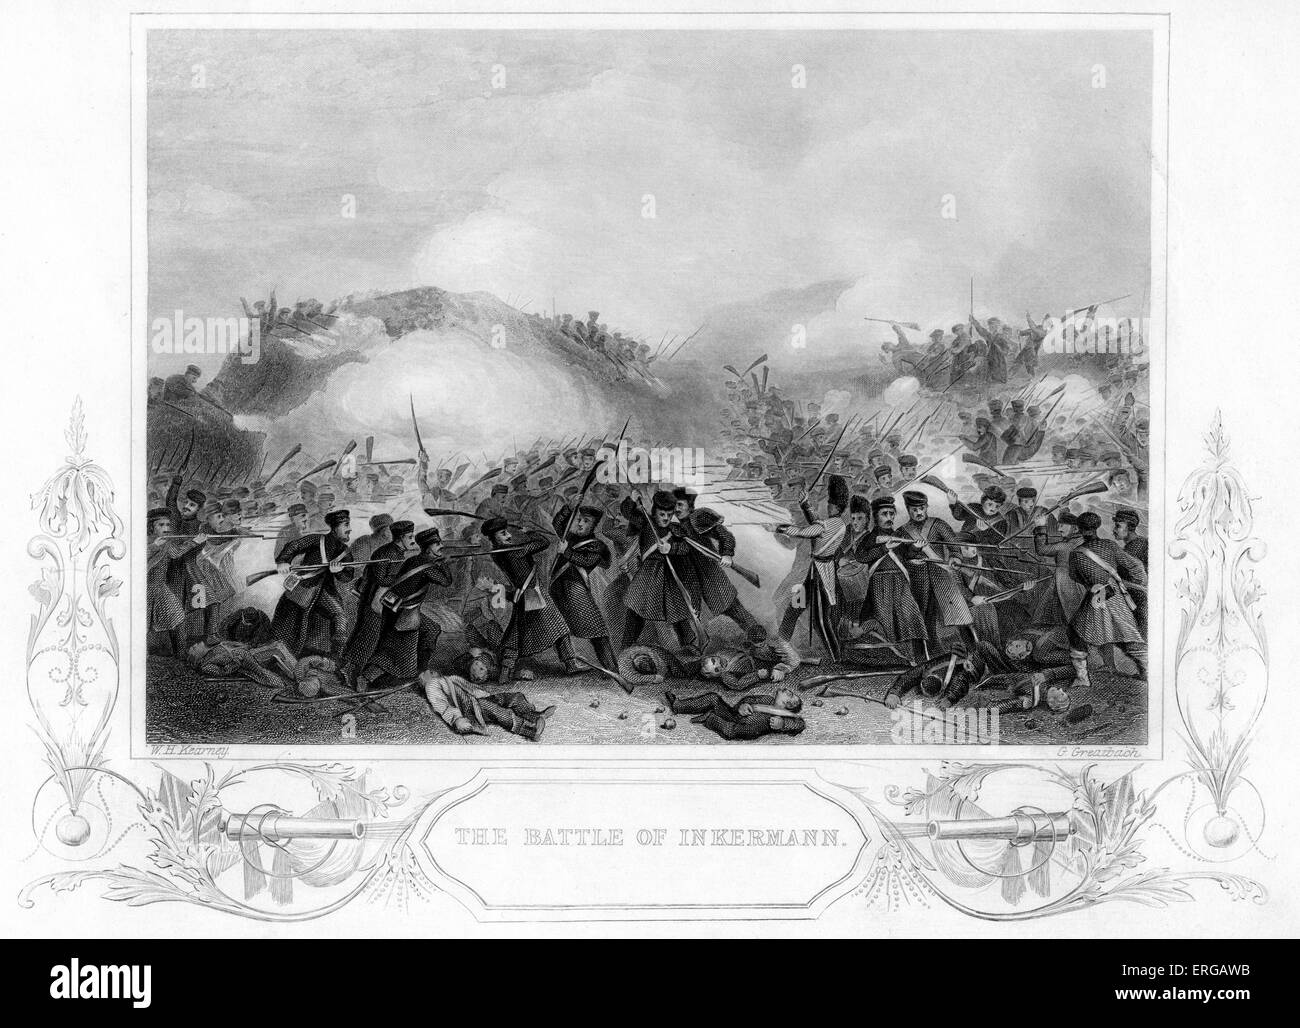 La batalla de Inkerman fue combatido durante la Guerra de Crimea, el 5 de noviembre de 1854, entre los ejércitos aliados de Gran Bretaña y Francia Foto de stock